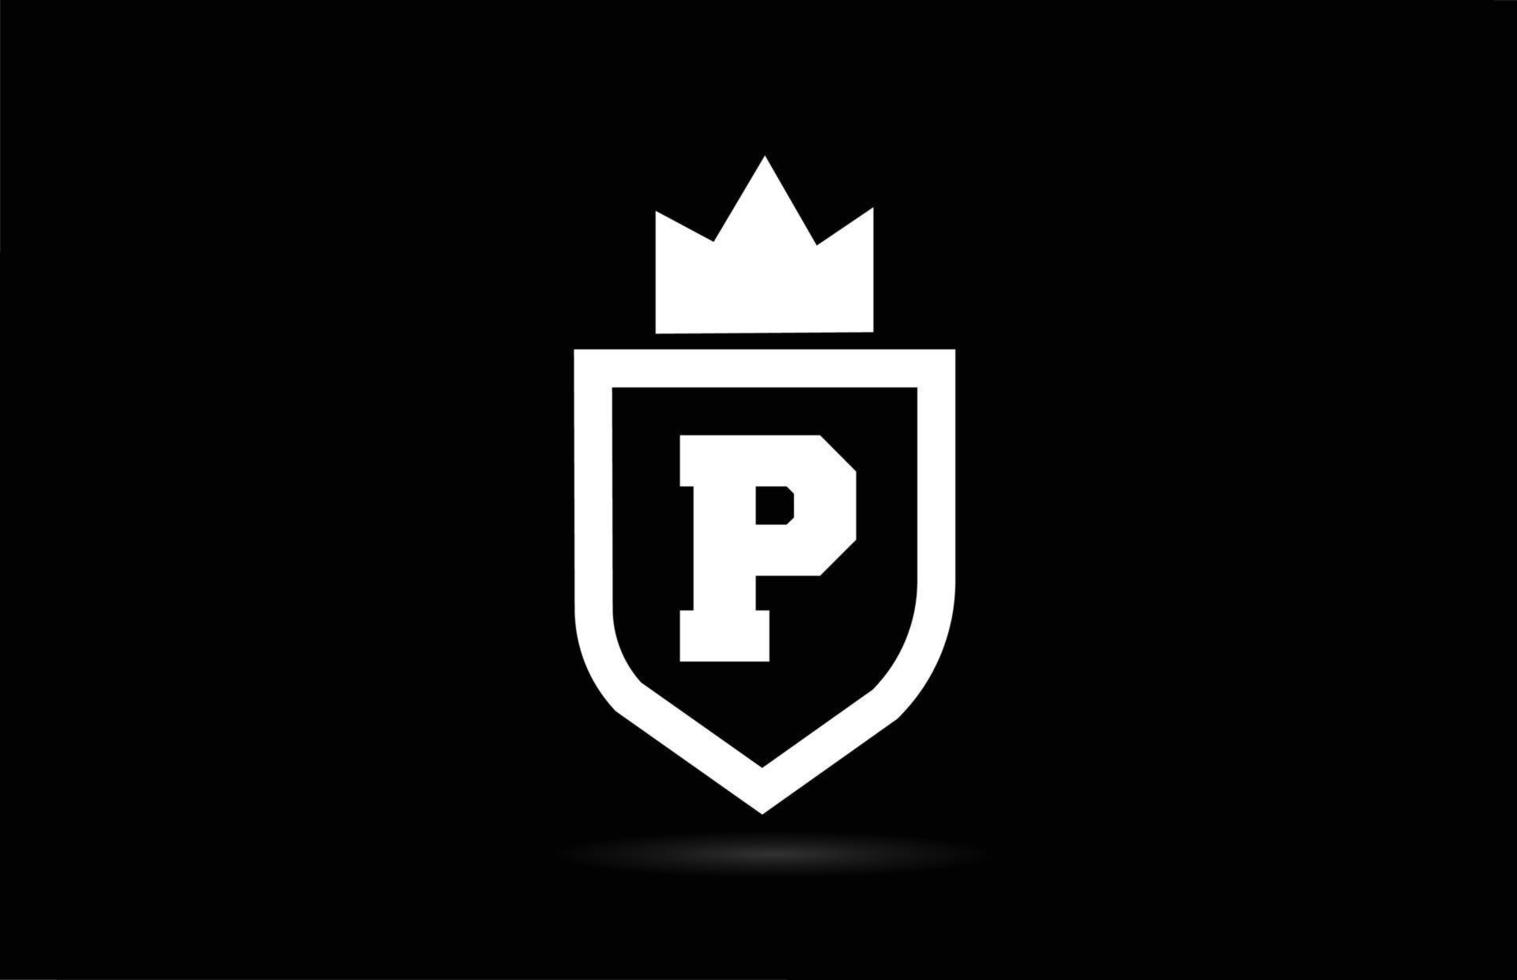 p alfabet letterpictogram logo met koning kroon ontwerp. creatieve sjabloon voor bedrijf en bedrijf in witte en zwarte kleuren vector